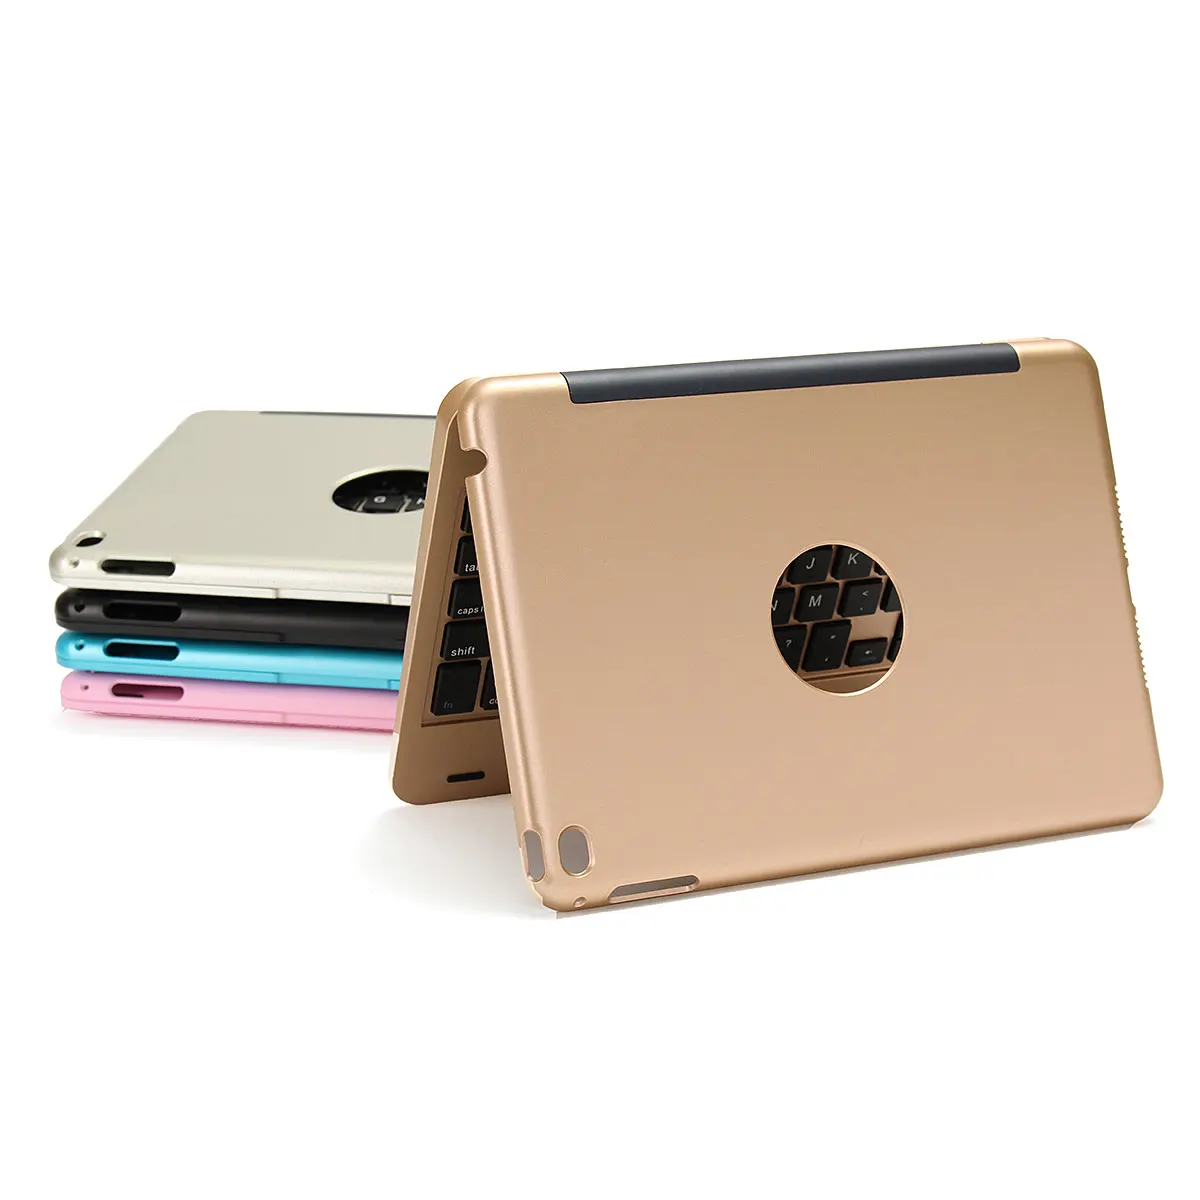 Алюминиевый ультра тонкий портативный беспроводной bluetooth 3,0 Клавиатура чехол держатель для iPad Mini 4 7,9 дюйм чехол для клавиатуры Чехол